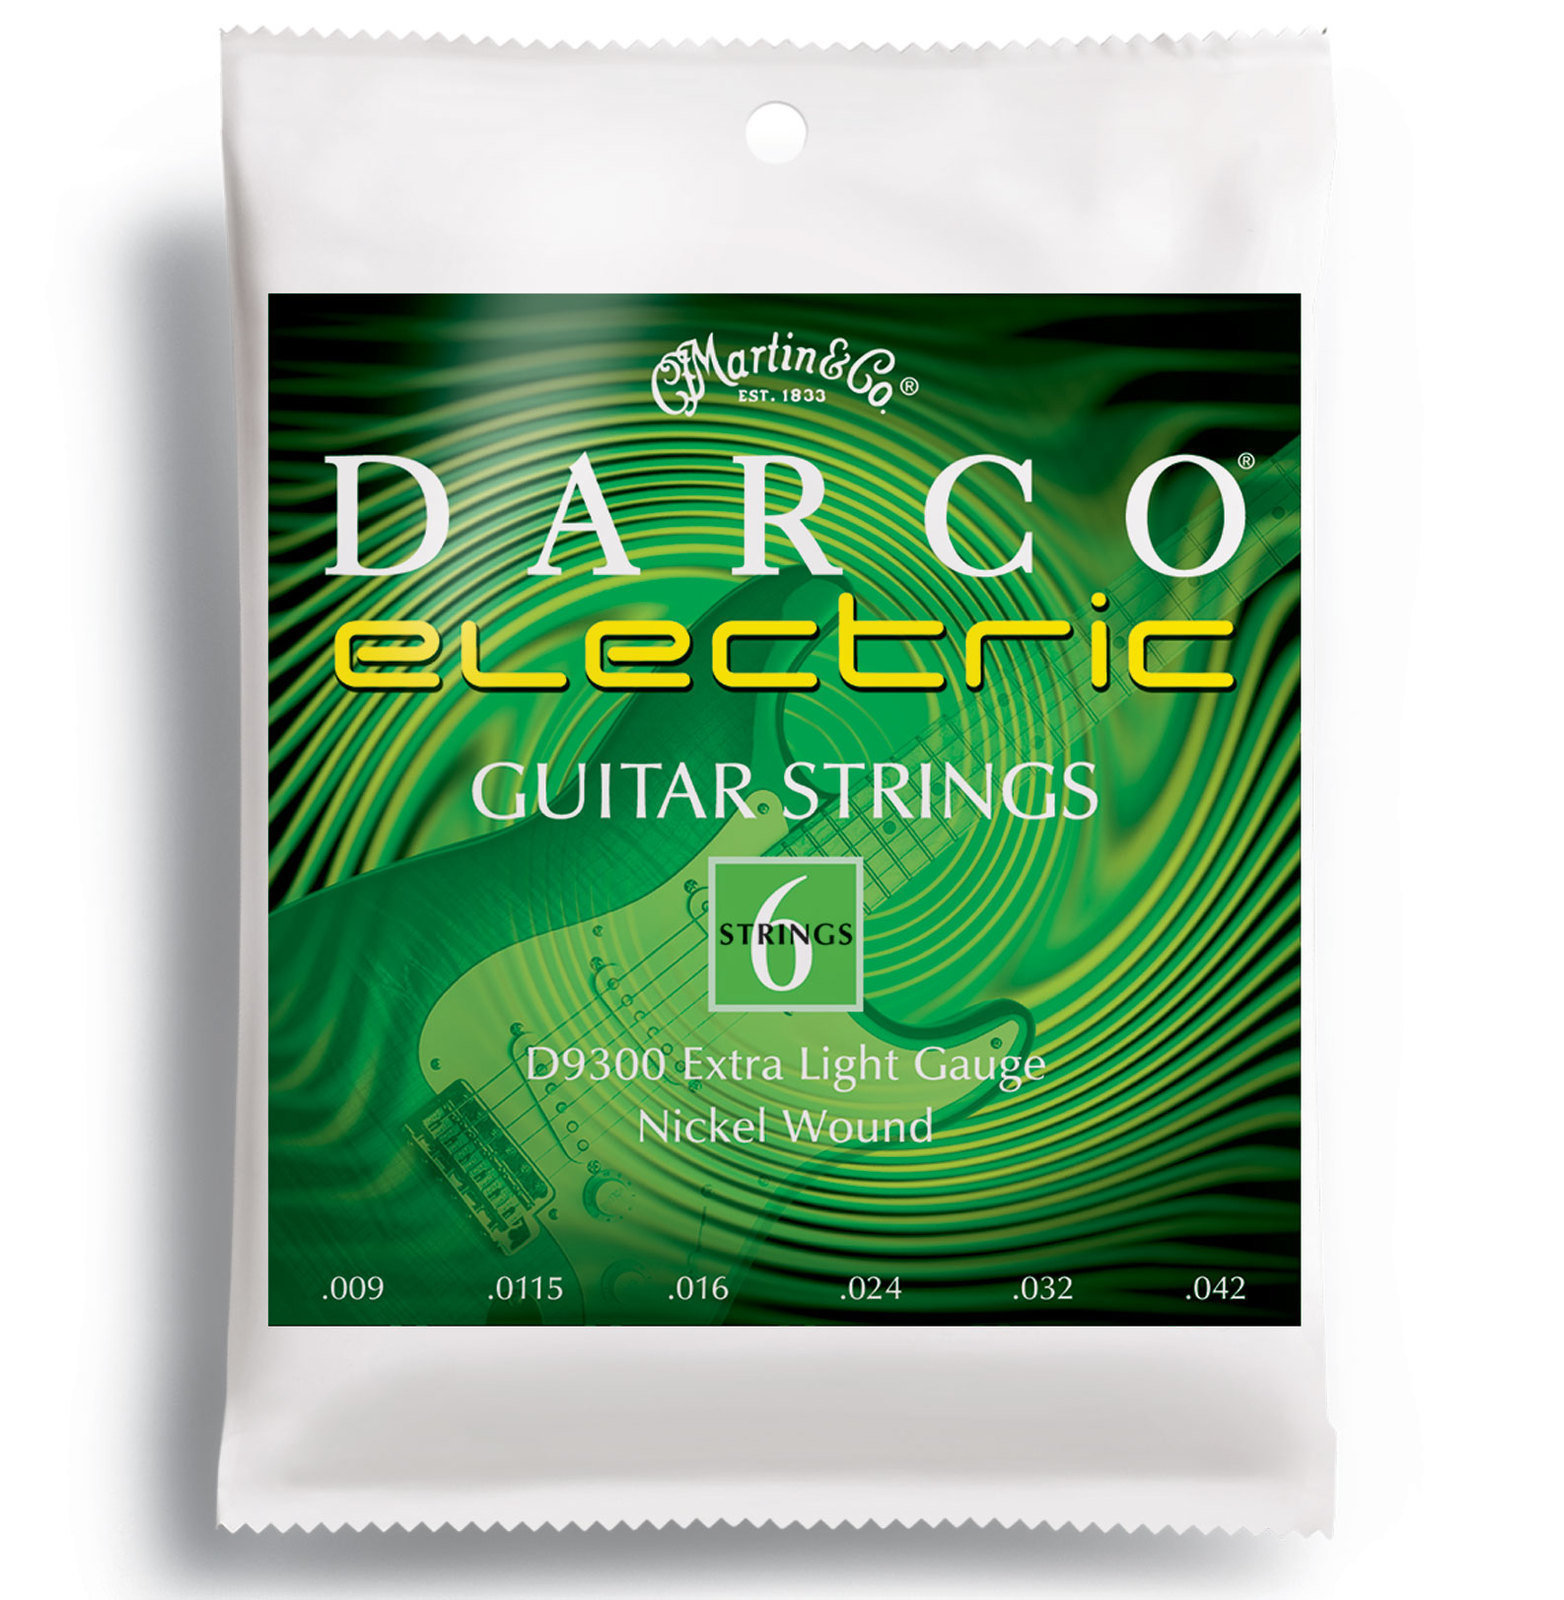 Χορδές για Ηλεκτρική Κιθάρα Martin D9300 Darco Electric Guitar Strings, Extra Light